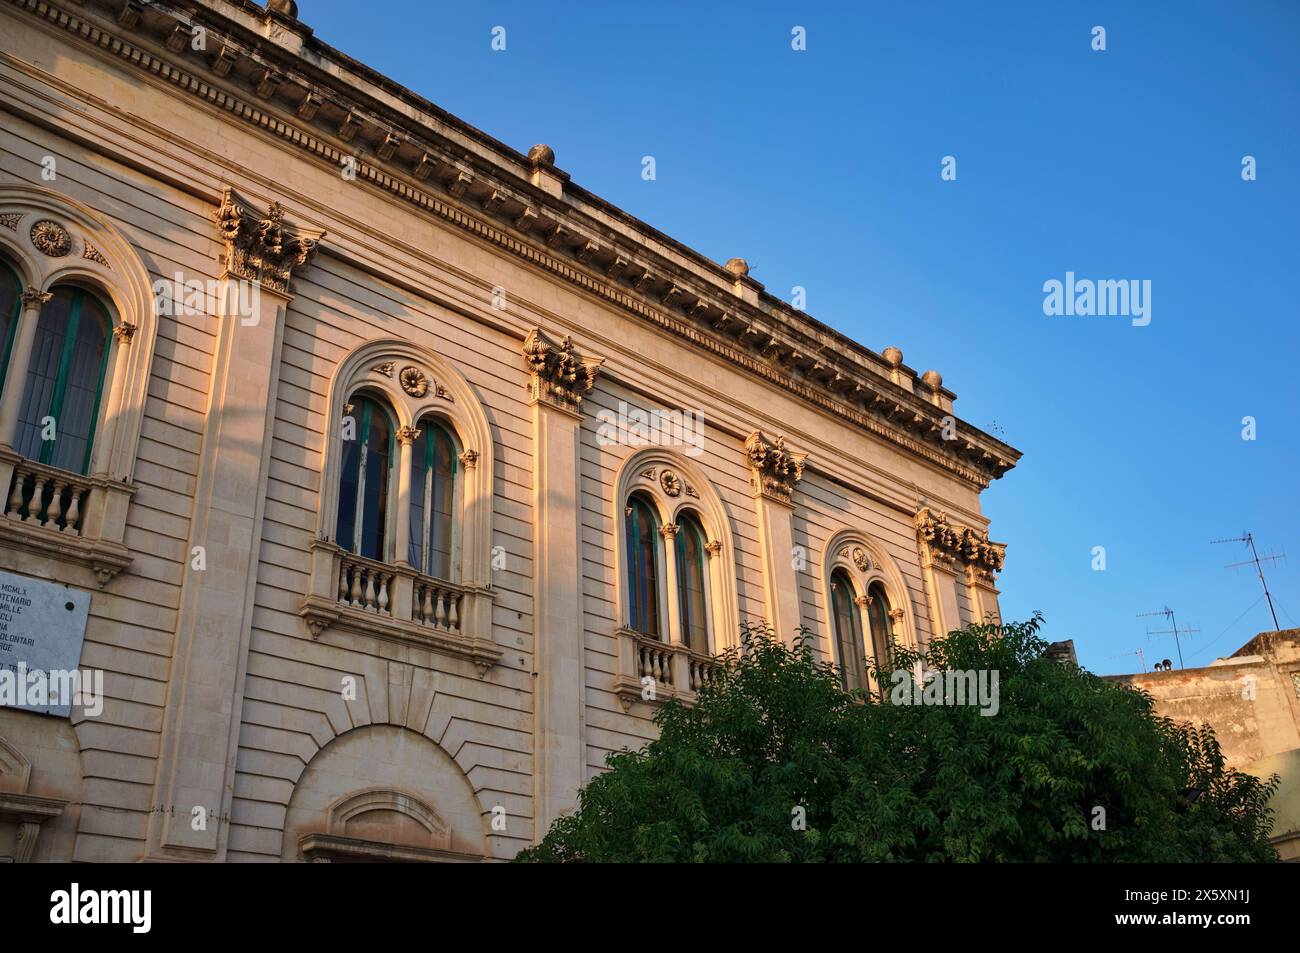 L'Italia, sicilia, Scicli (provincia di Ragusa), il municipio in stile barocco la facciata del palazzo al tramonto Foto Stock